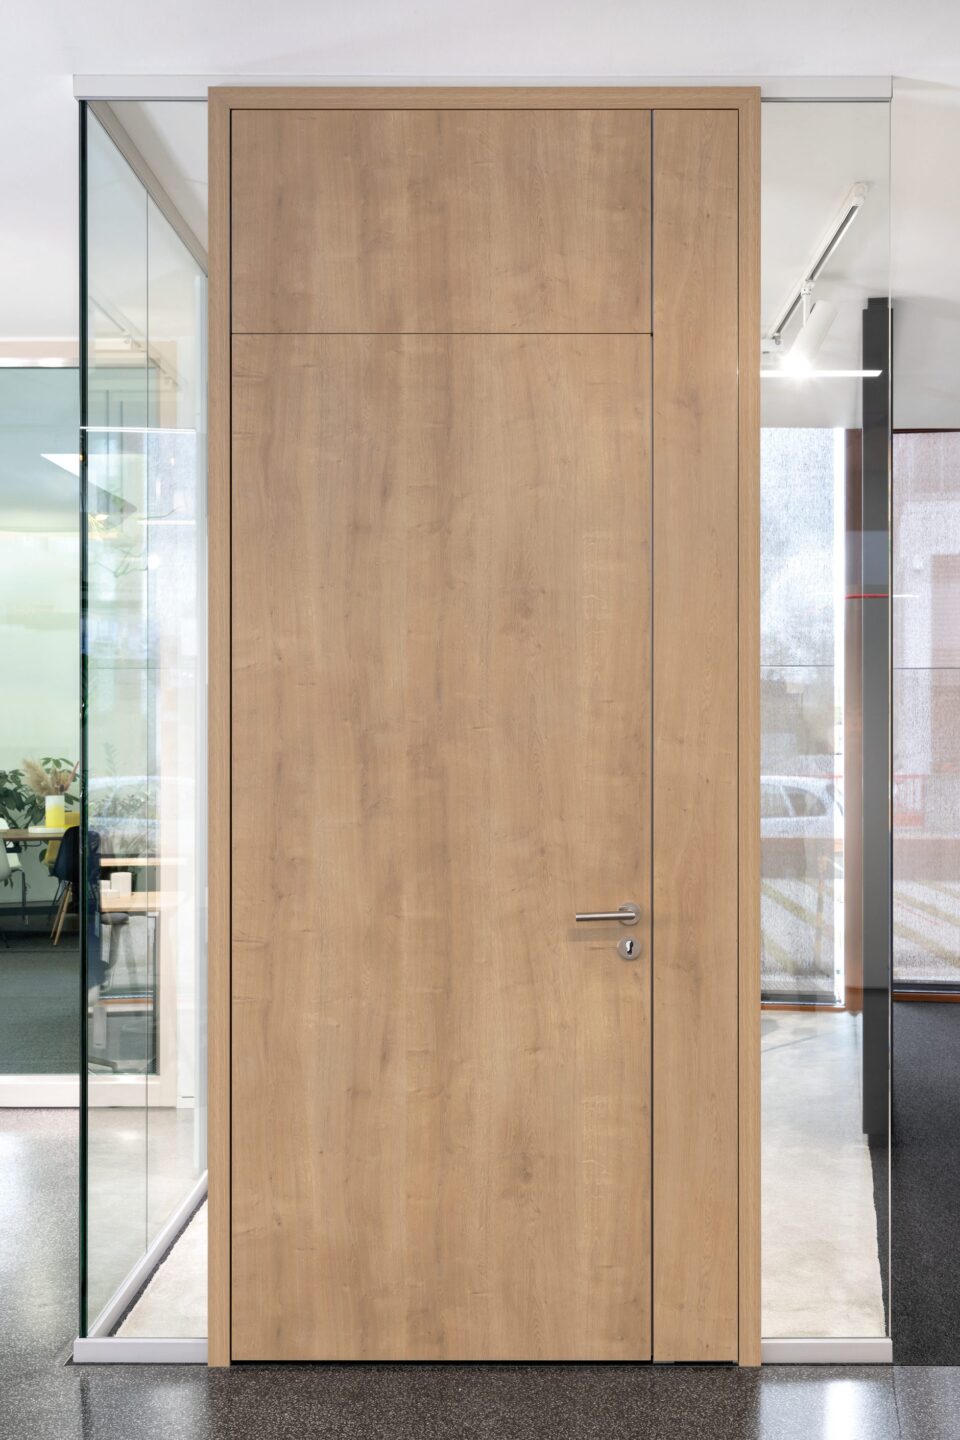 Wooden door element H70 with door frame T70 wood and side panel TST70 wood